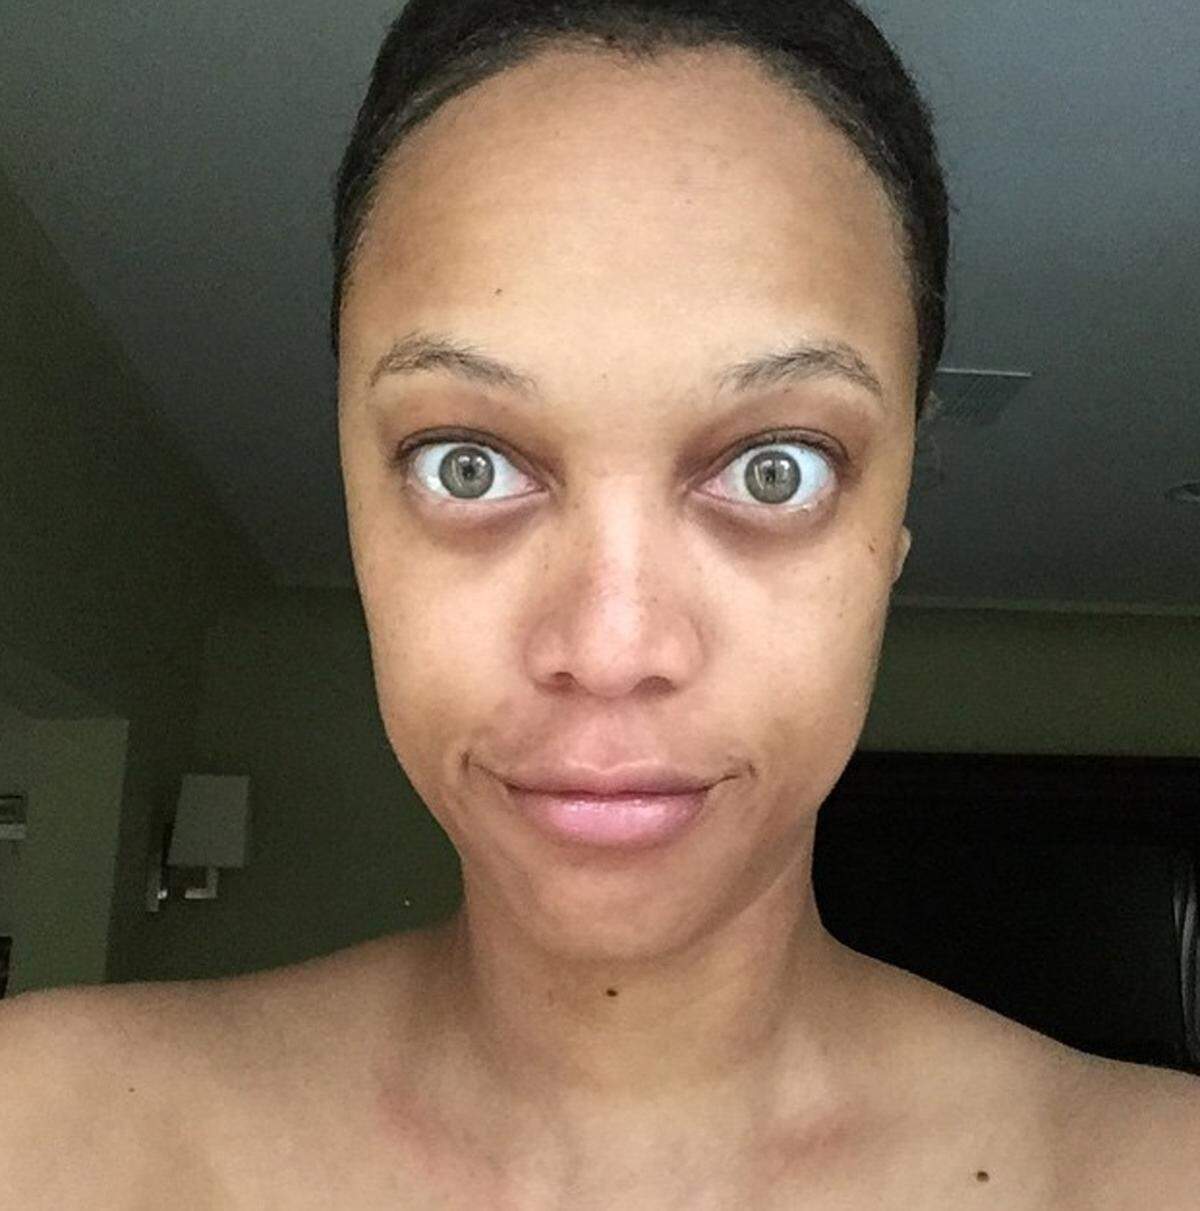 Den Mut sich ohne Make-up der Öffentlichkeit zu präsentieren hat Tyra Banks. Auch wenn sie sich mit ihren Augenringen unzufrieden zeigt, steht sie zu ihrer ungeschminkten Haut.